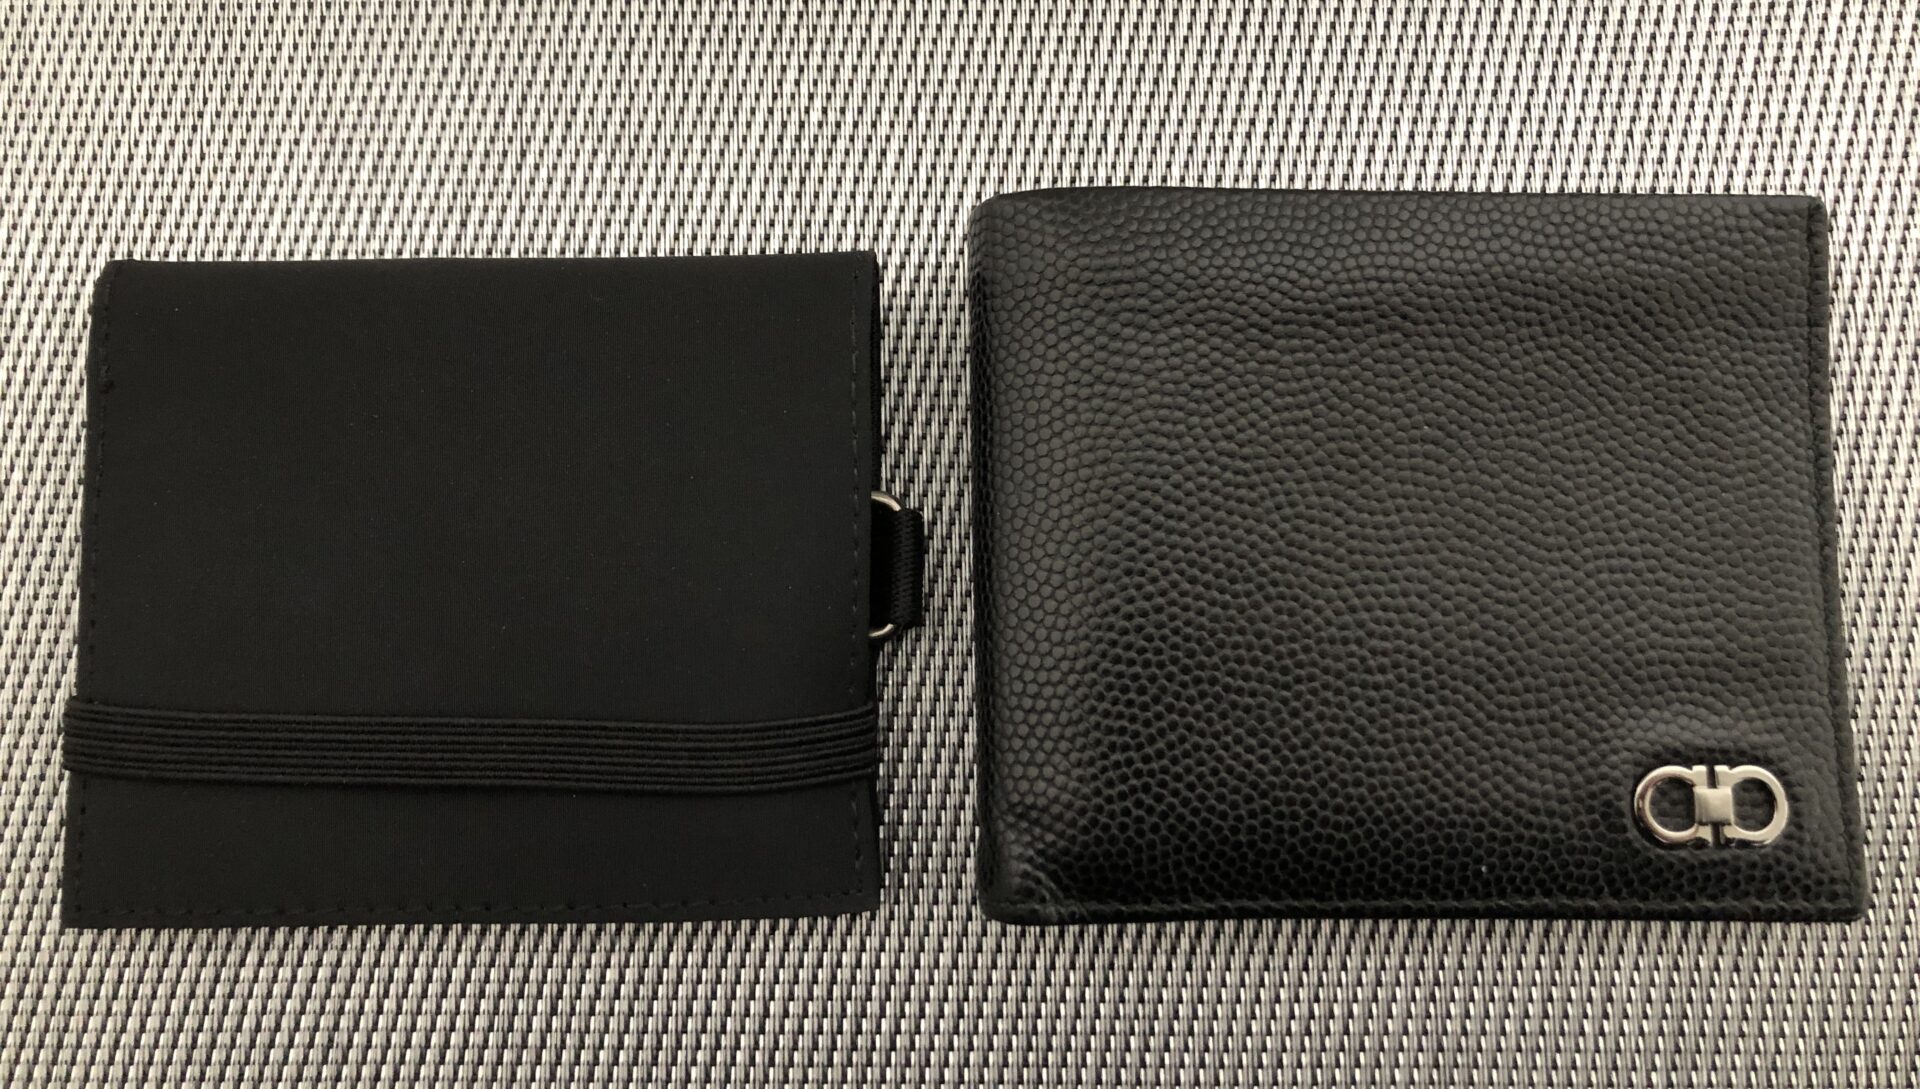 無印良品「トラベル用ウォレット」と一般的な折りたたみ財布の大きさを比較